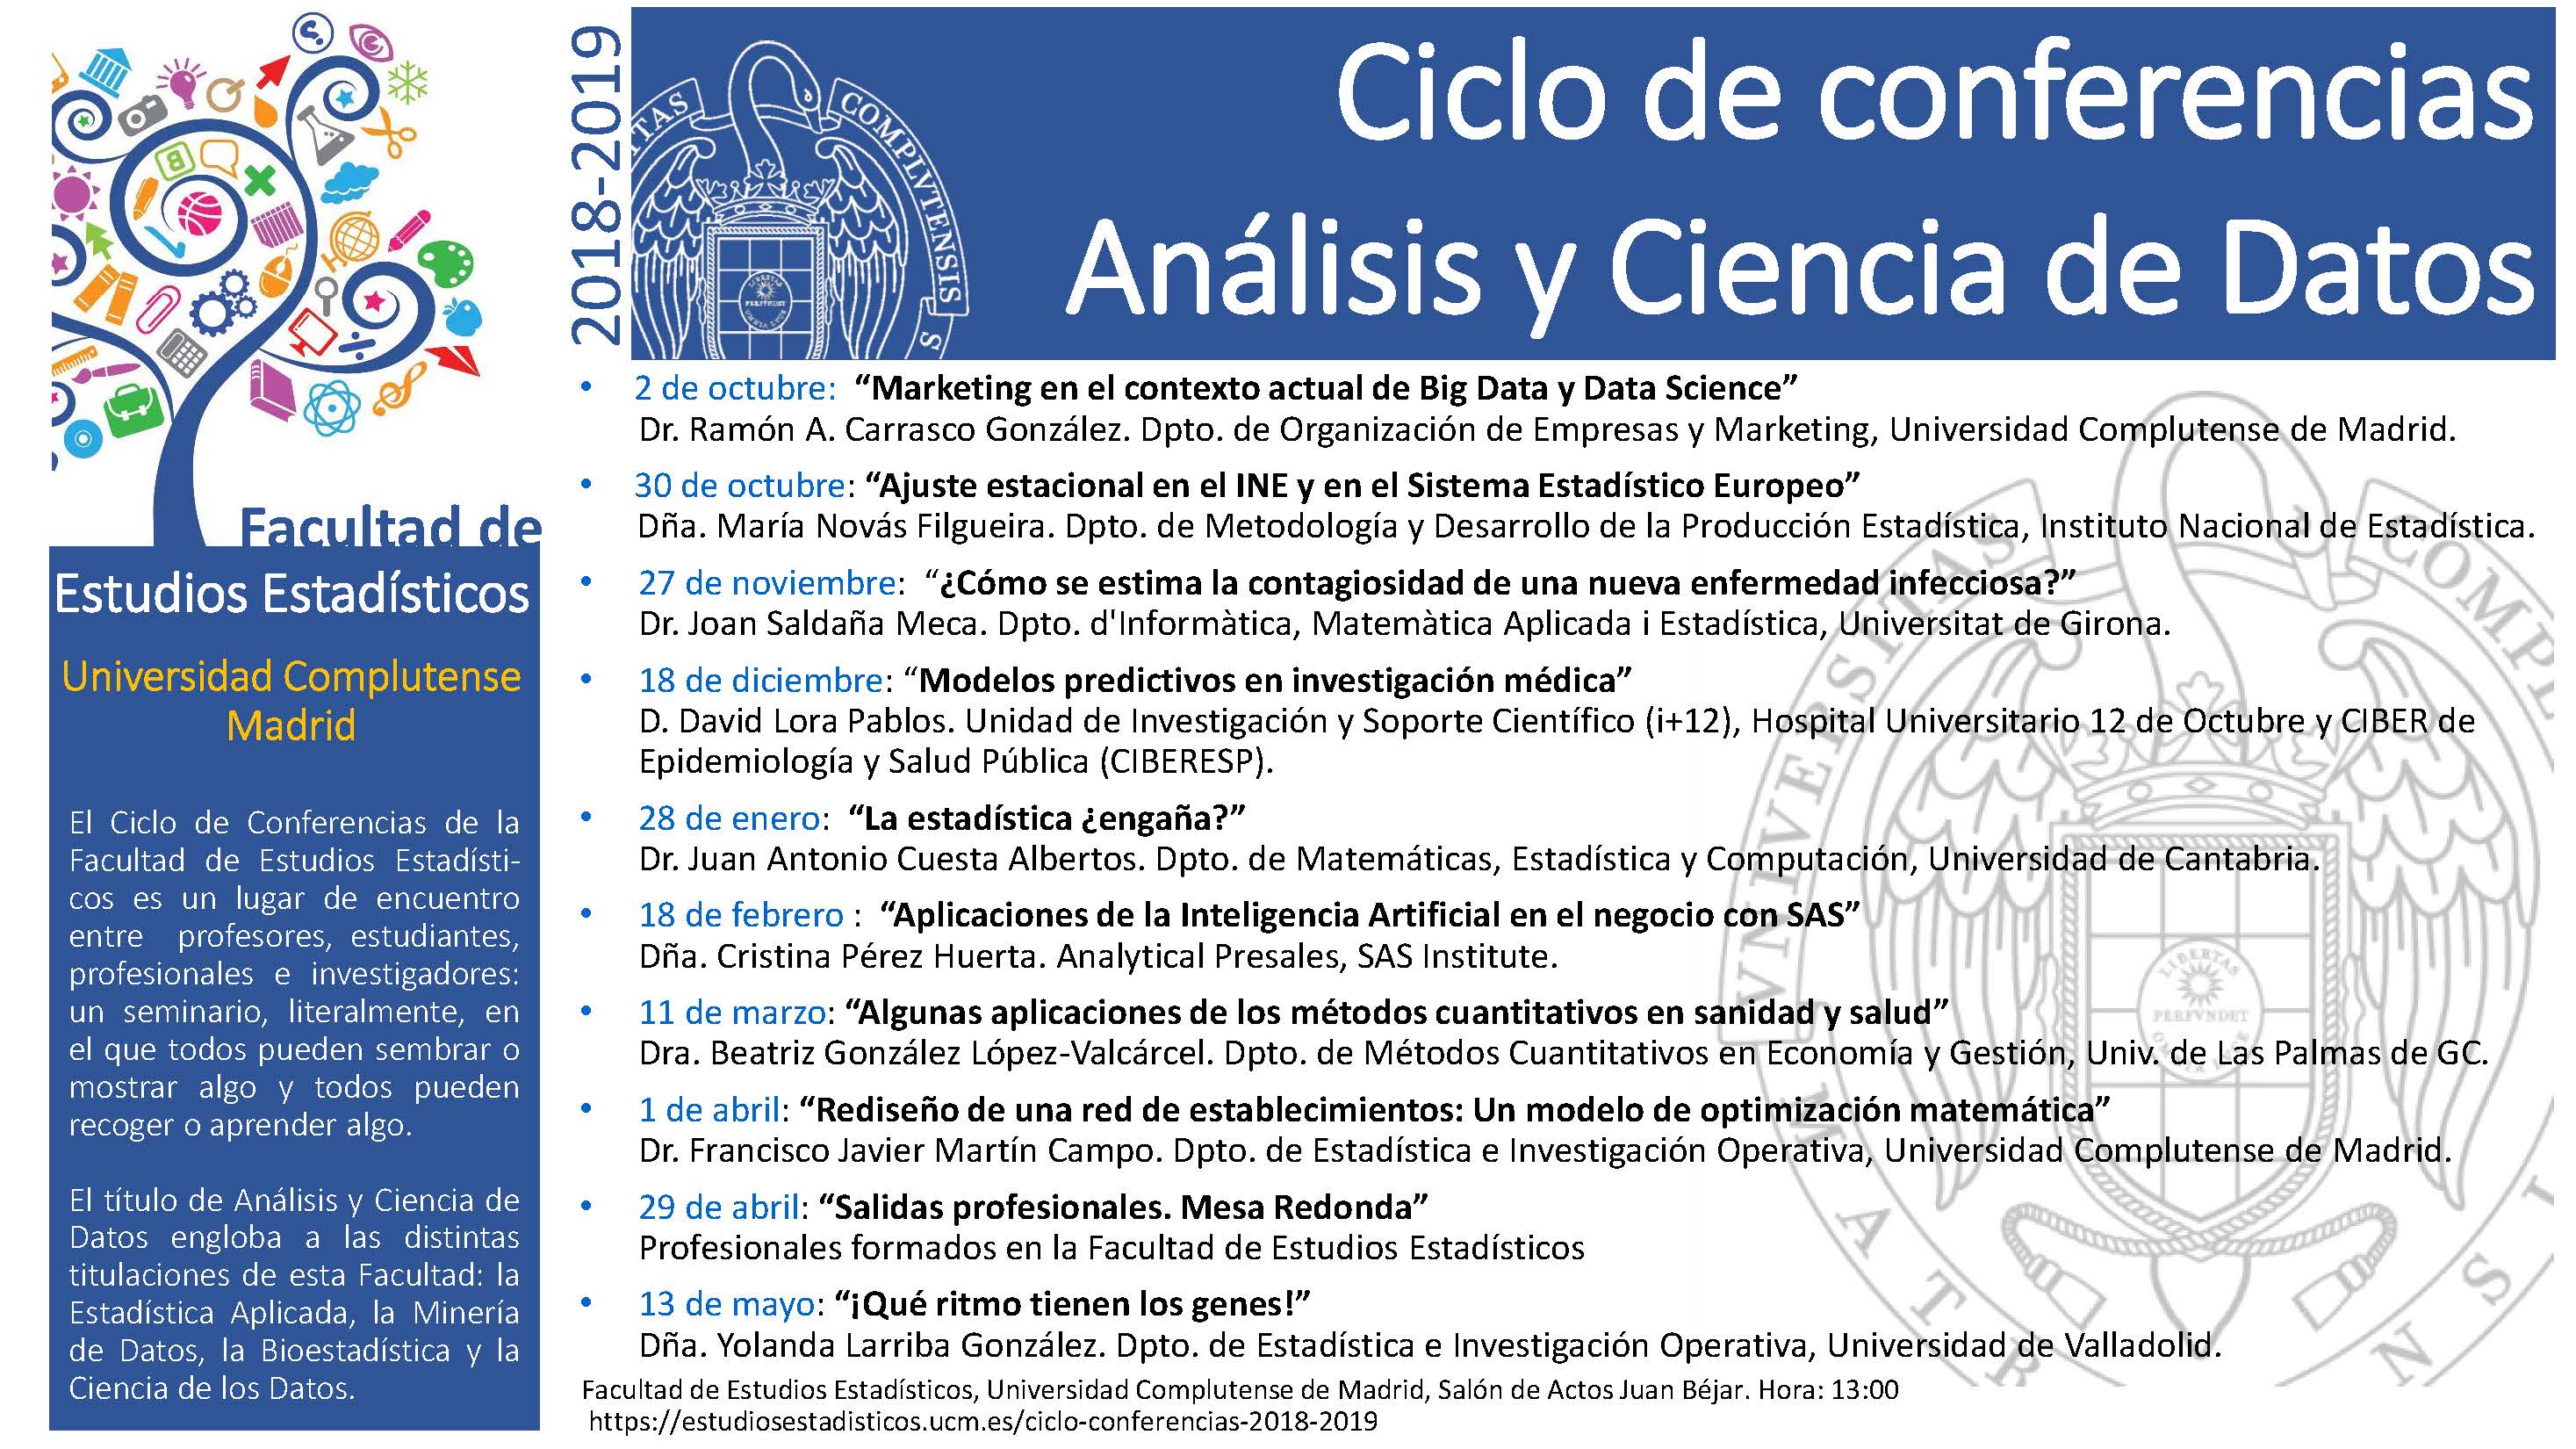 Ciclo de conferencias "Análisis y Ciencia de Datos" (Curso 2018/19)